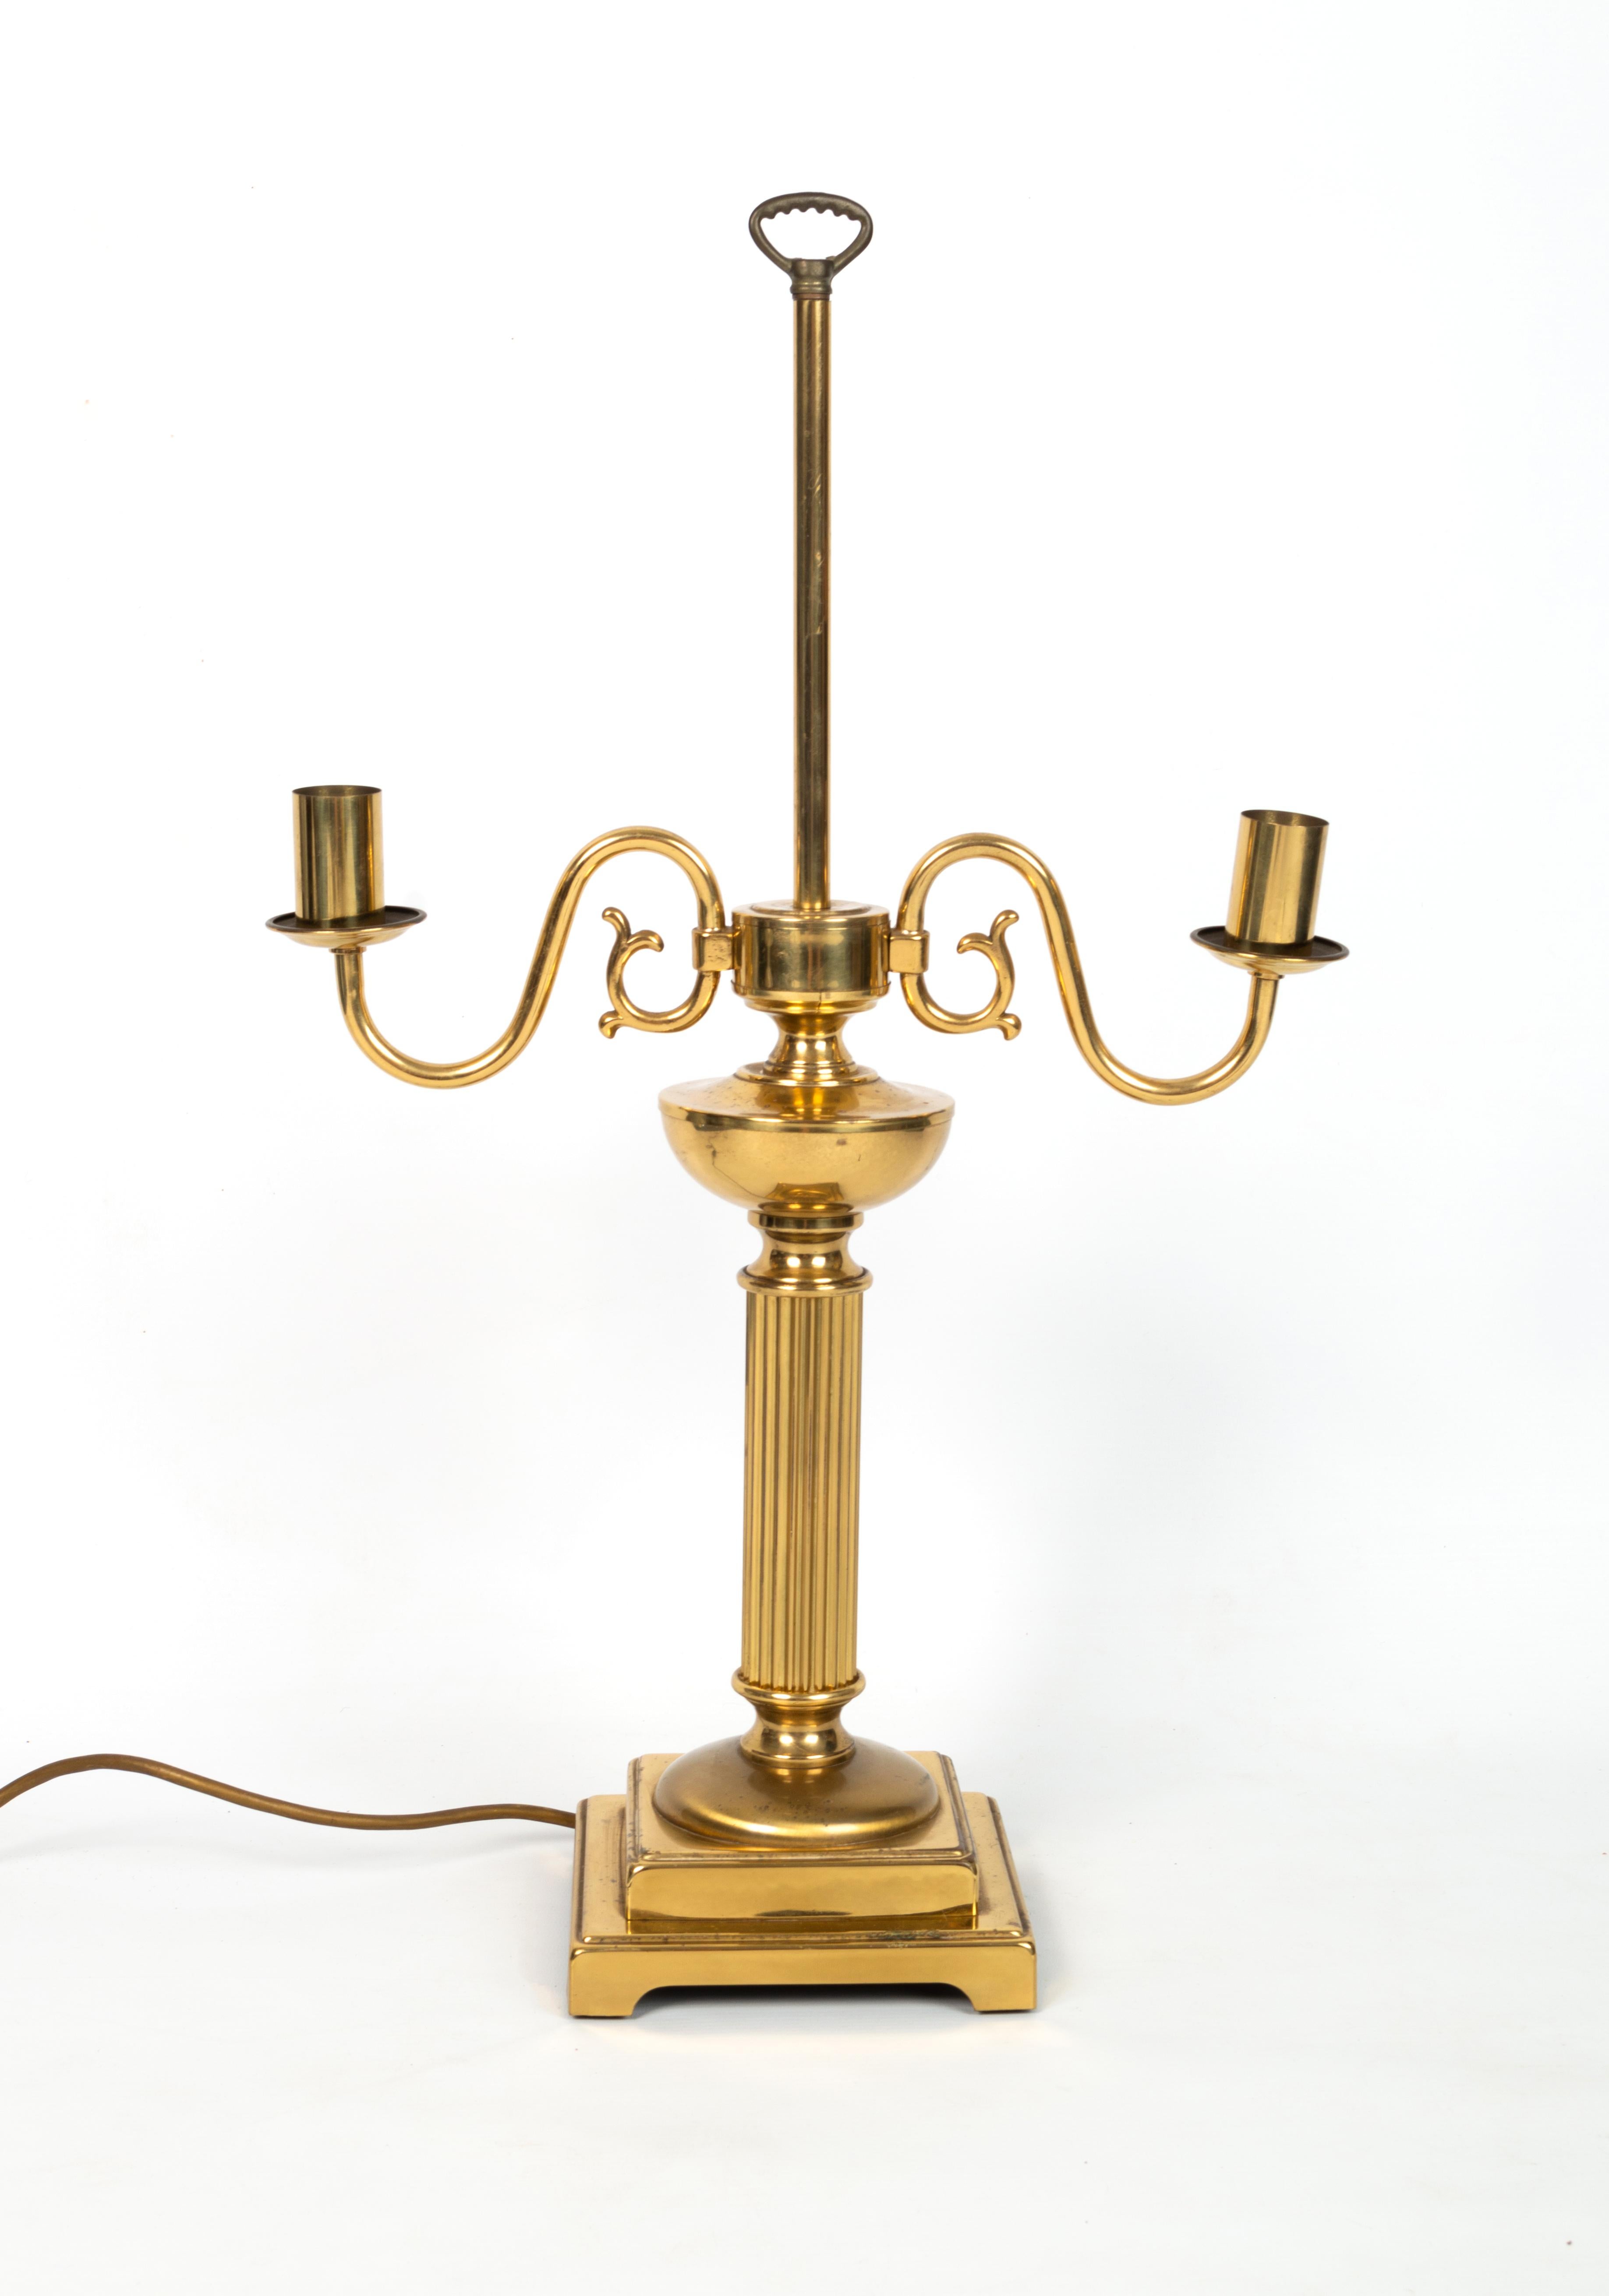 Trio de lampes de table néoclassiques anglaises à colonne corinthienne candélabre en laiton 
C.1950

En bon état, avec quelques signes d'usure attendus correspondant à l'âge.

Dimensions :
Lampe à candélabre : 
H 61cm
W 36cm
D 15,5